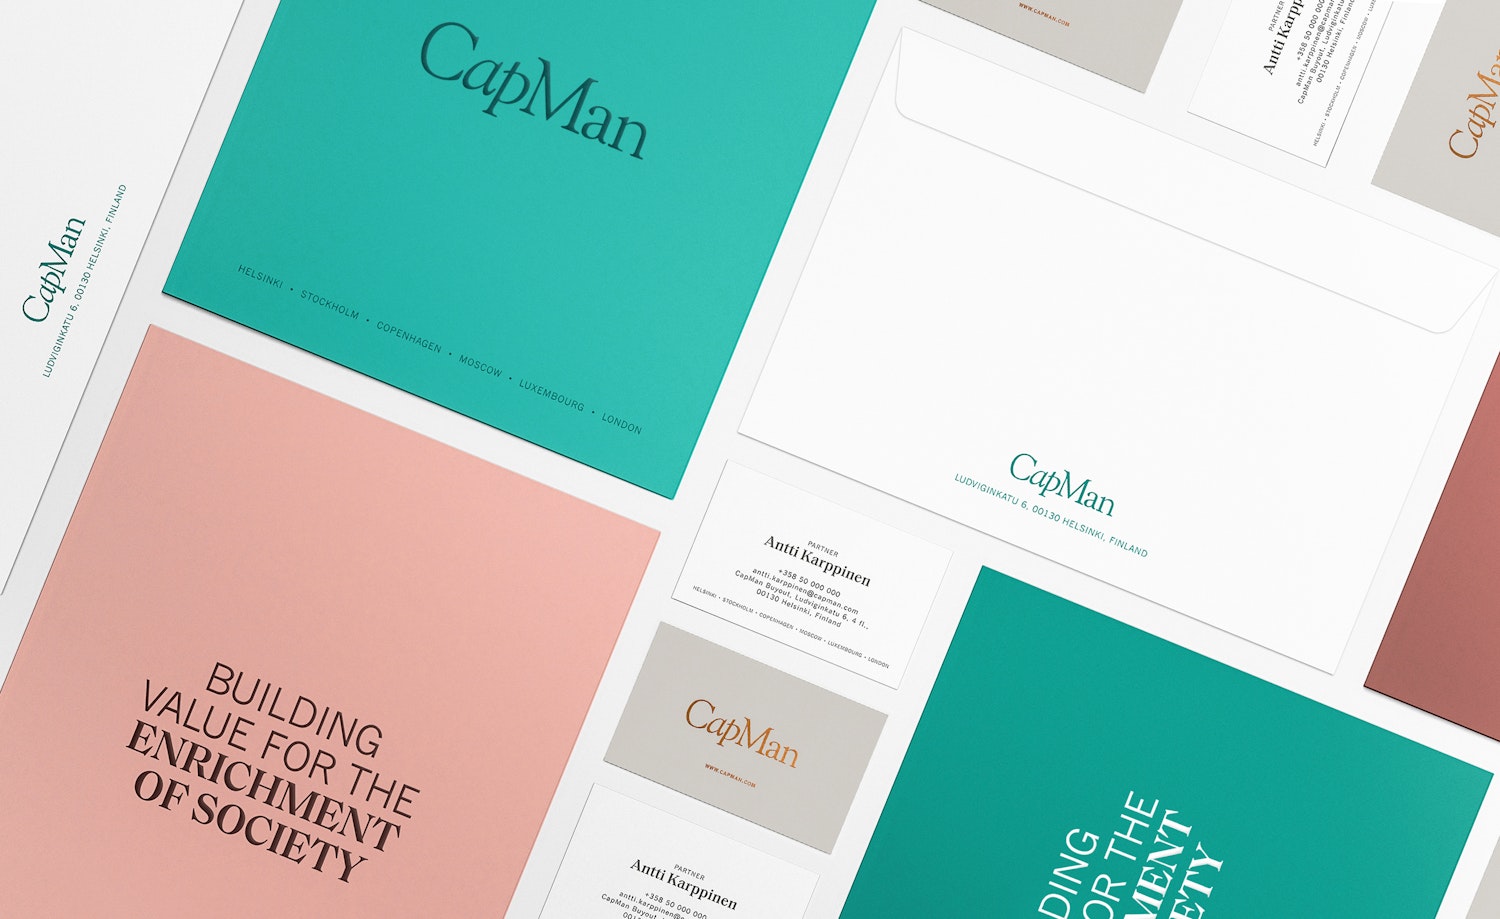 CapMan brand elements.